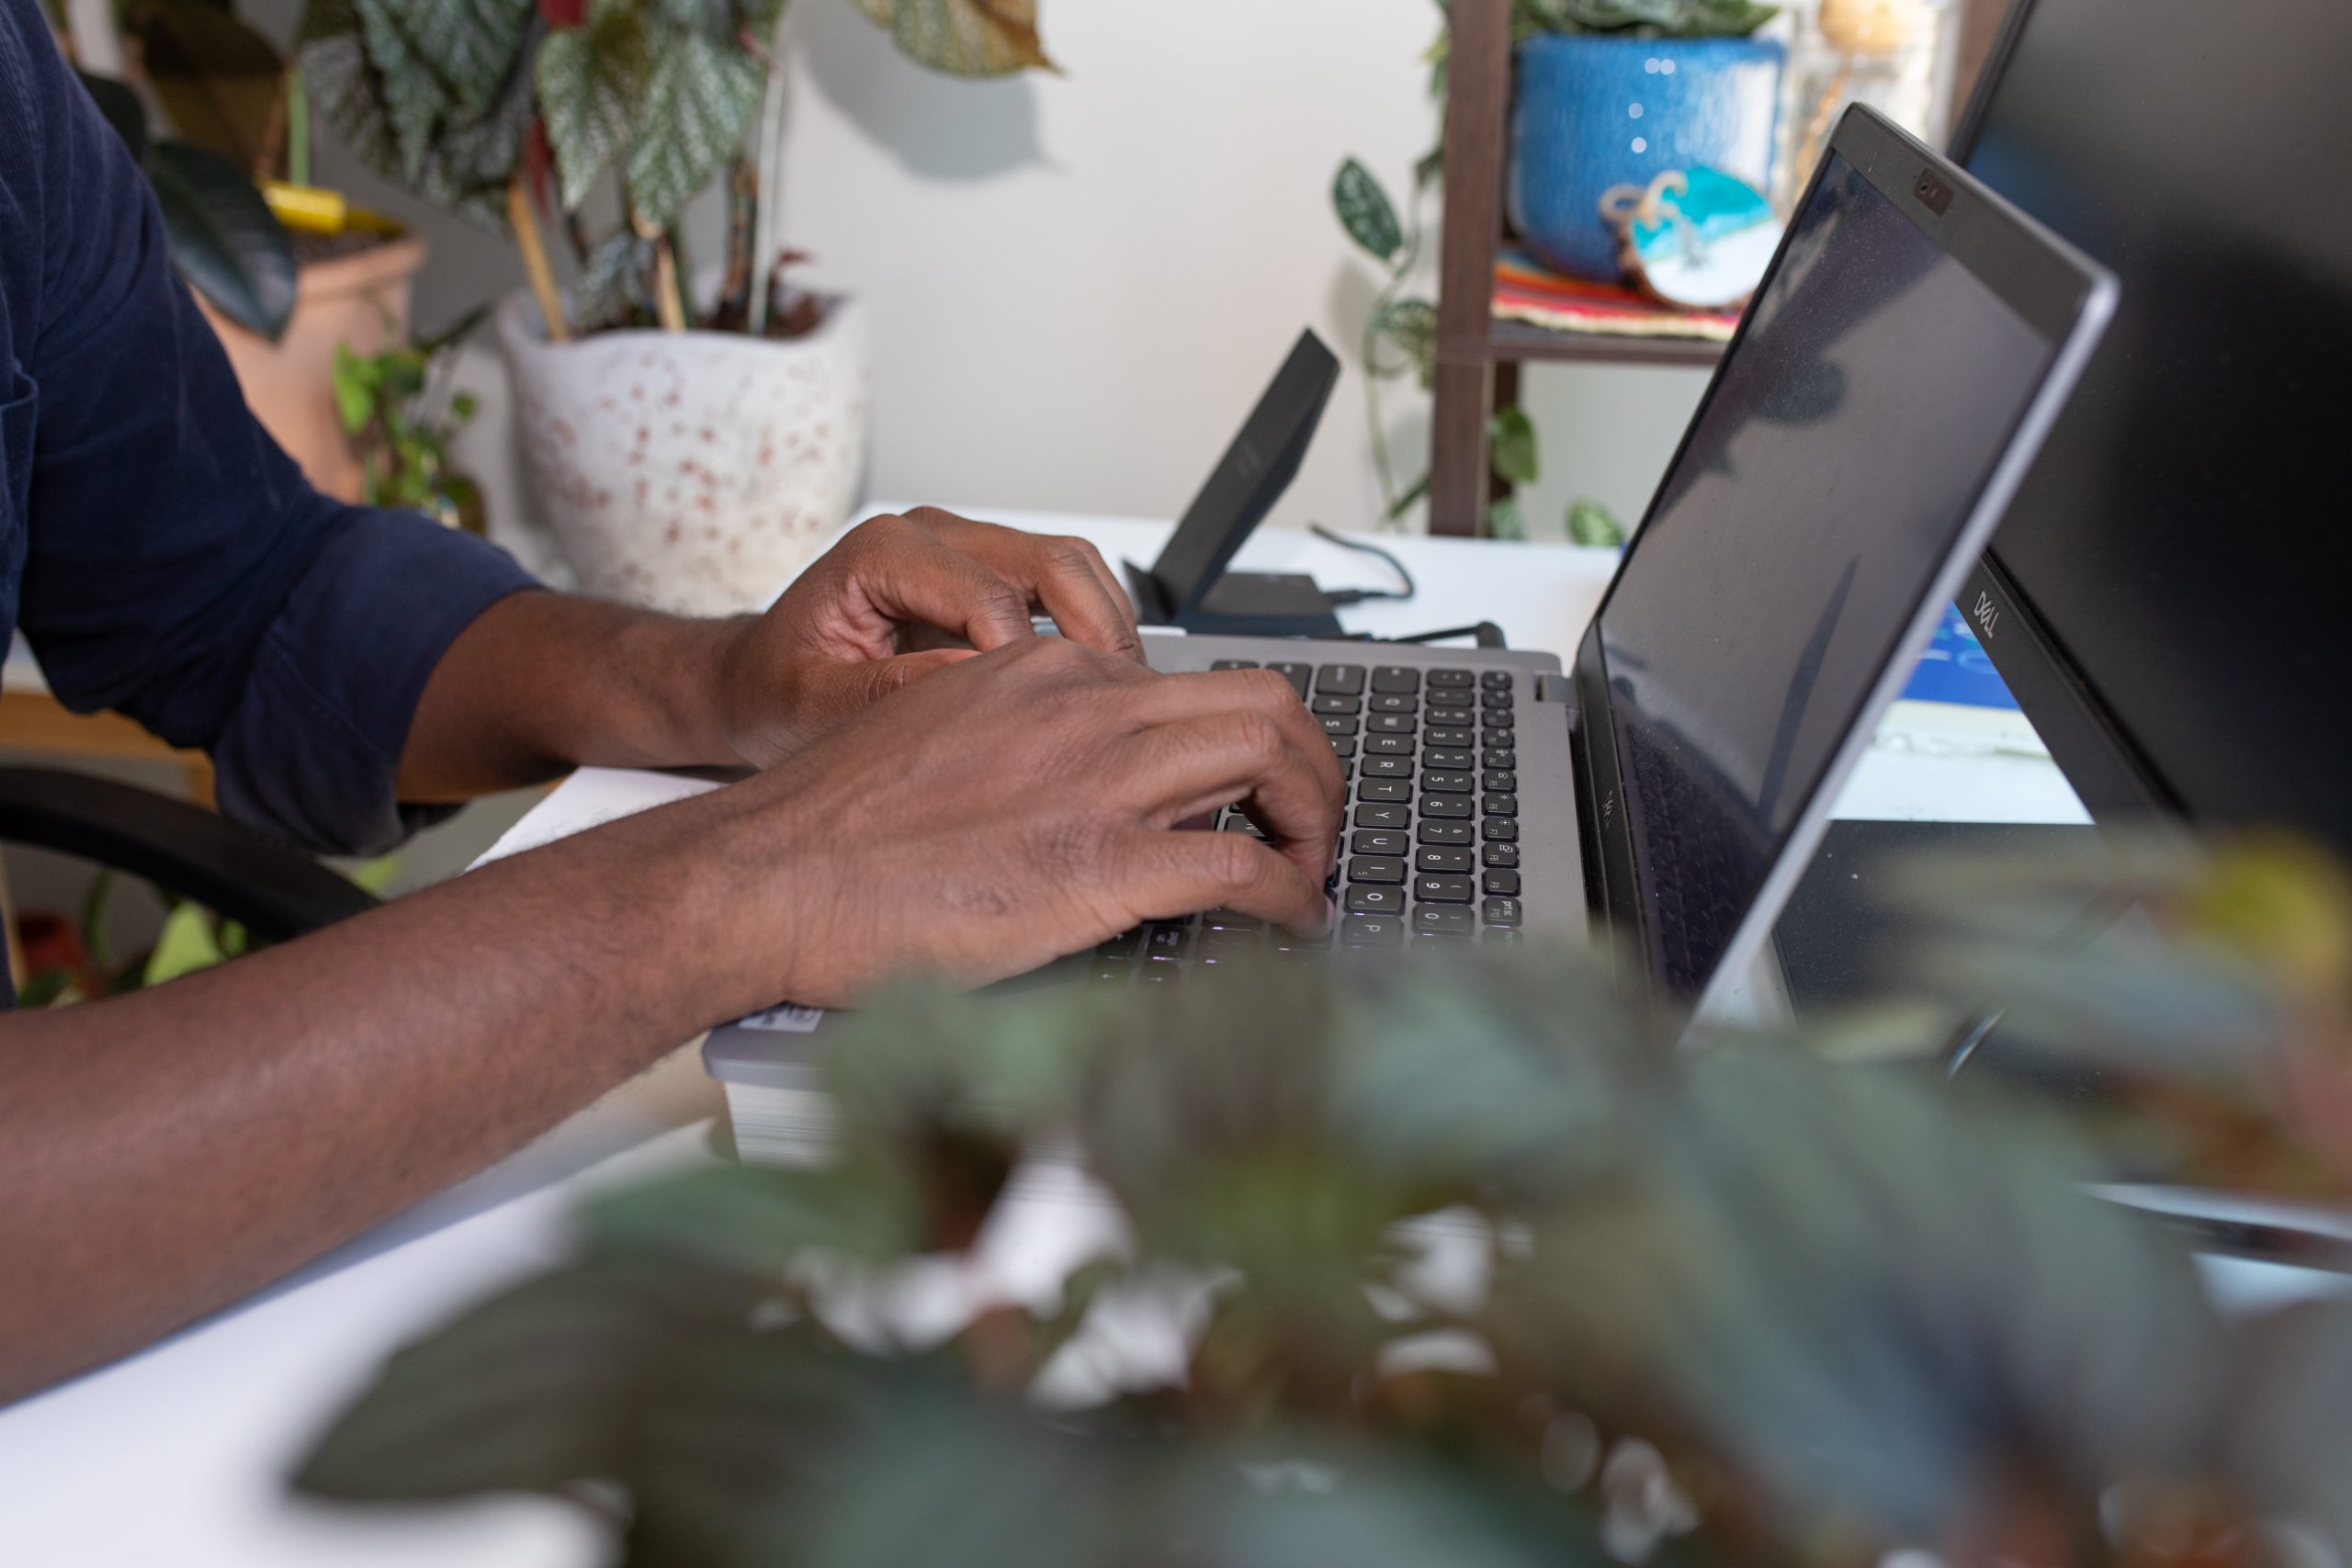 Un homme noir, assis à un bureau tapant à un ordinateur, seuls ses bras sont visibles, dans une pièce avec des plantes.